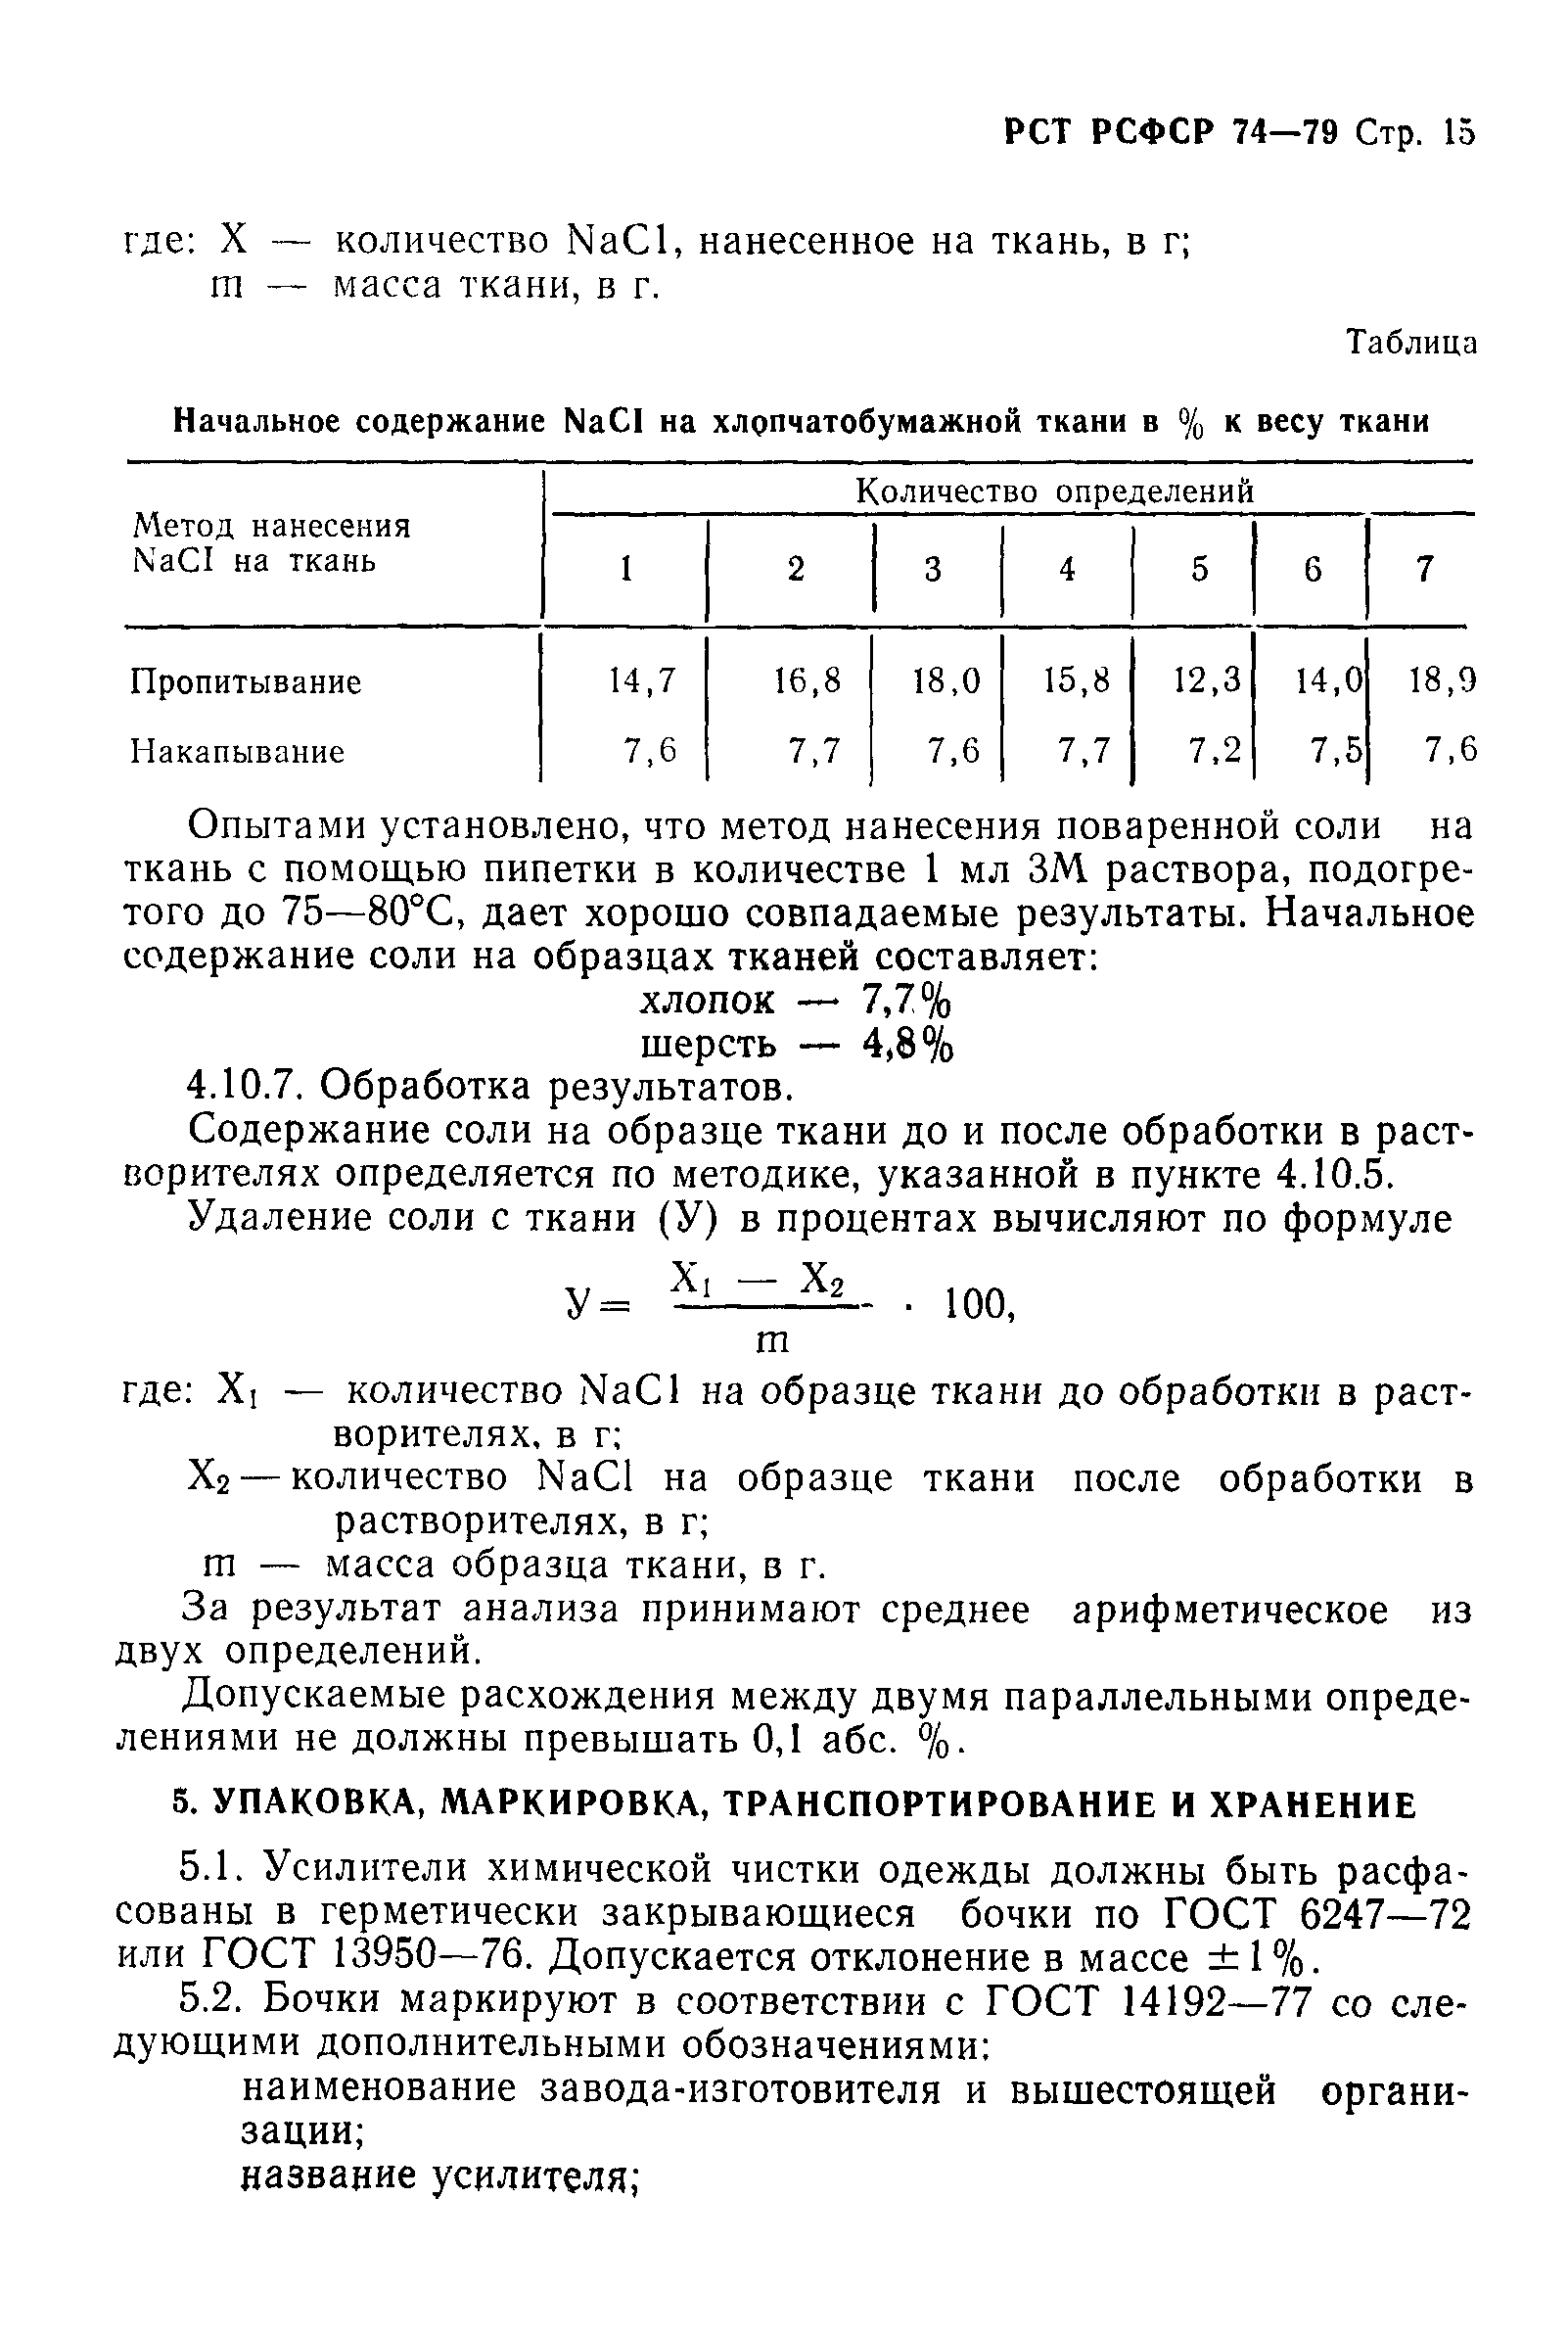 РСТ РСФСР 74-79